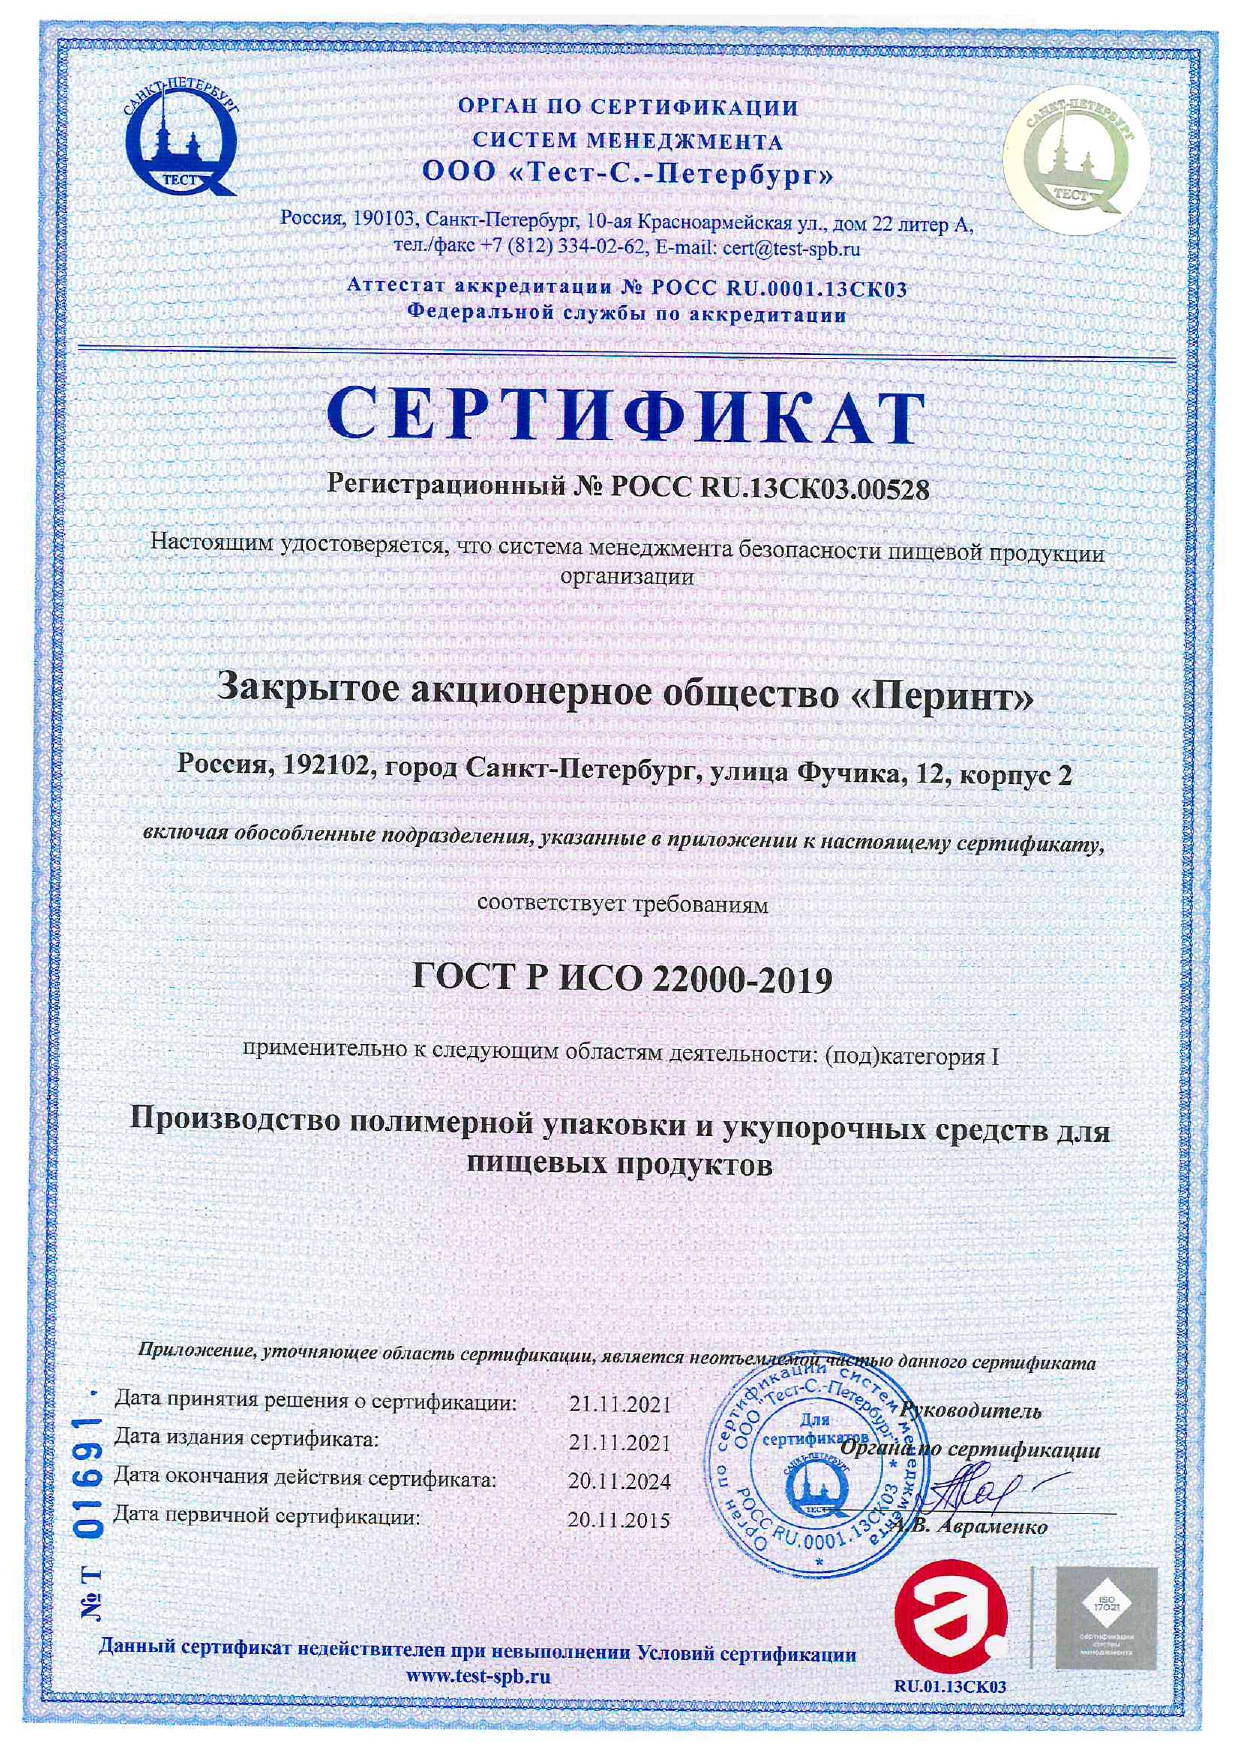 Сертификат соответствия СМ БПП требованиям ГОСТ Р ИСО 22000-2019_page_1_2022